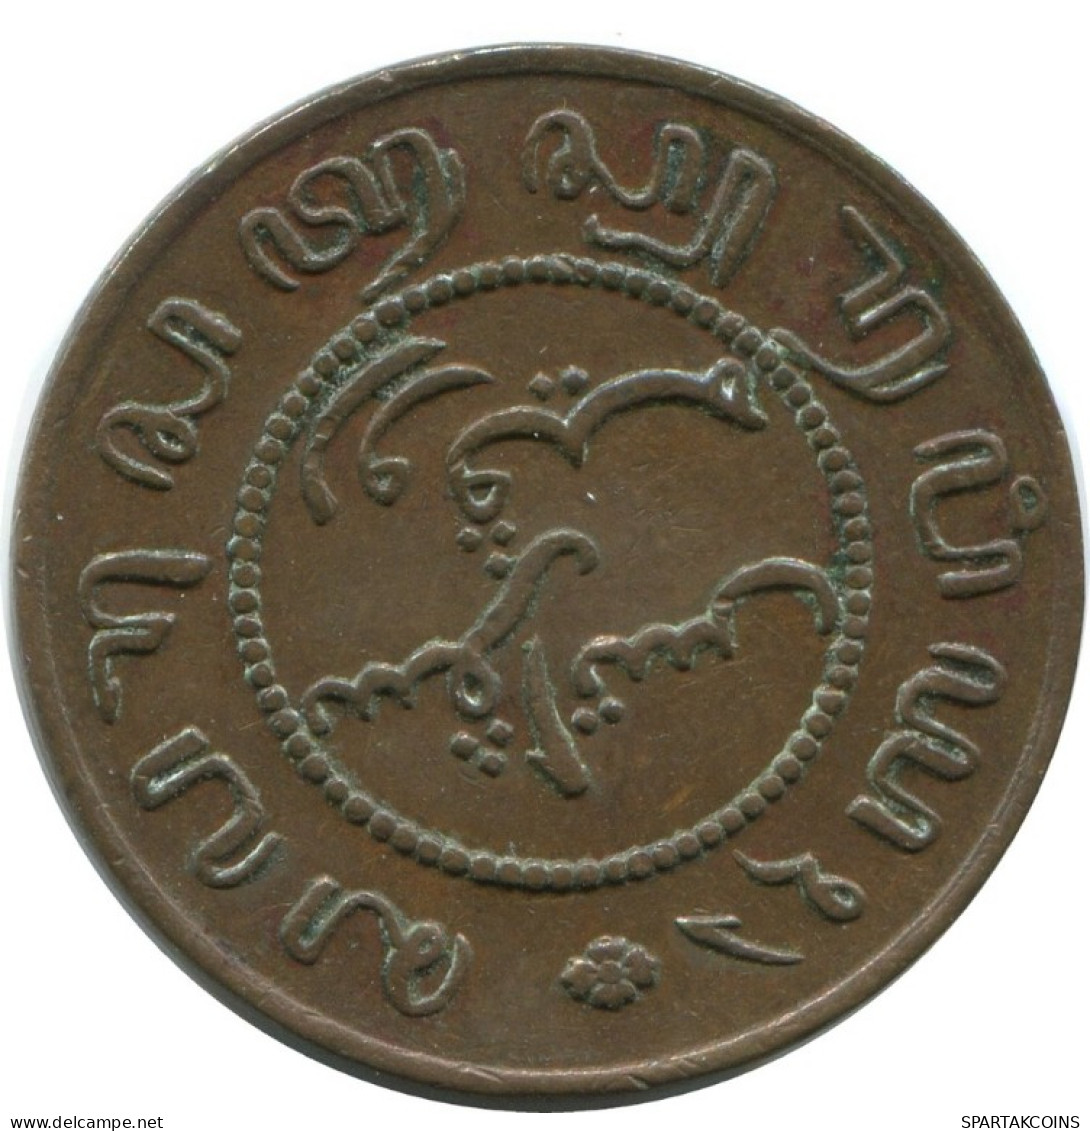 1857 1 CENT INDIAS ORIENTALES DE LOS PAÍSES BAJOS #AE847.27.E.A - Niederländisch-Indien